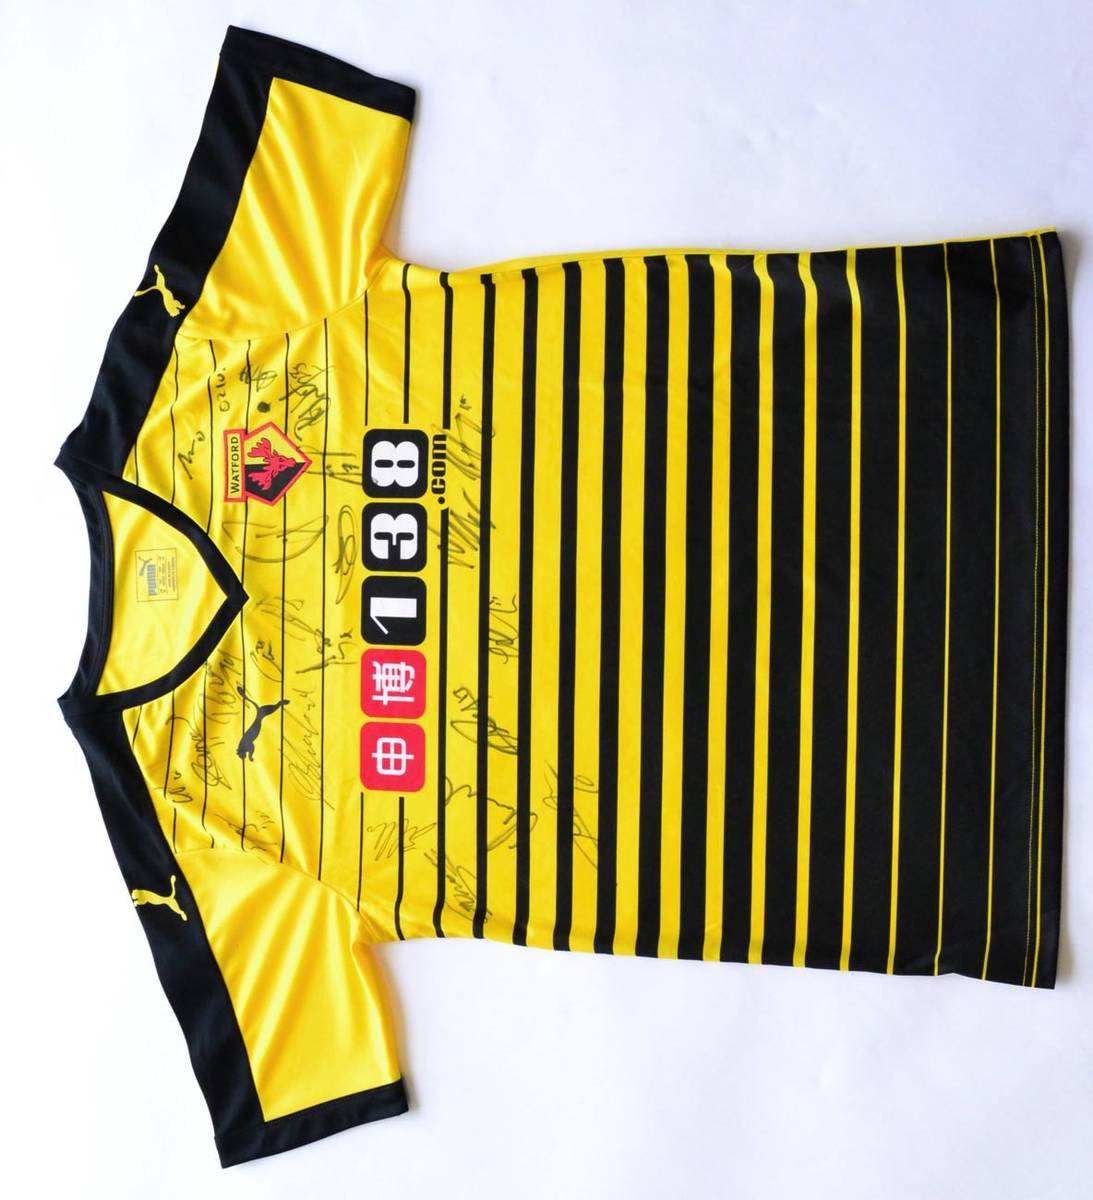 Lot 33 - Signed Football Shirt Watford, Yellow